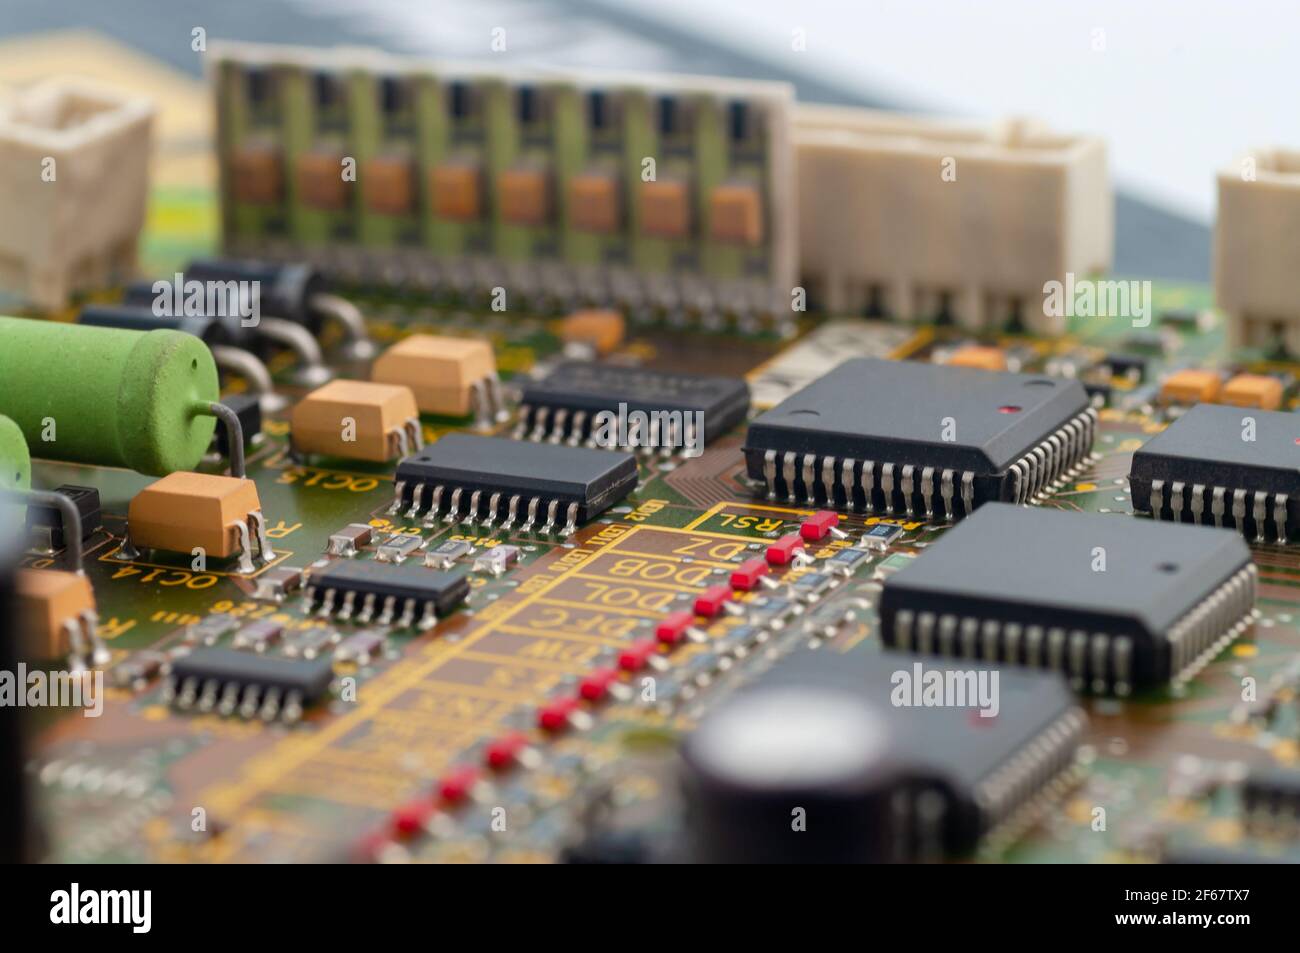 Gros plan de la carte de circuit imprimé électronique avec puce, processeur, circuits intégrés, résistances et connexions électroniques. Banque D'Images